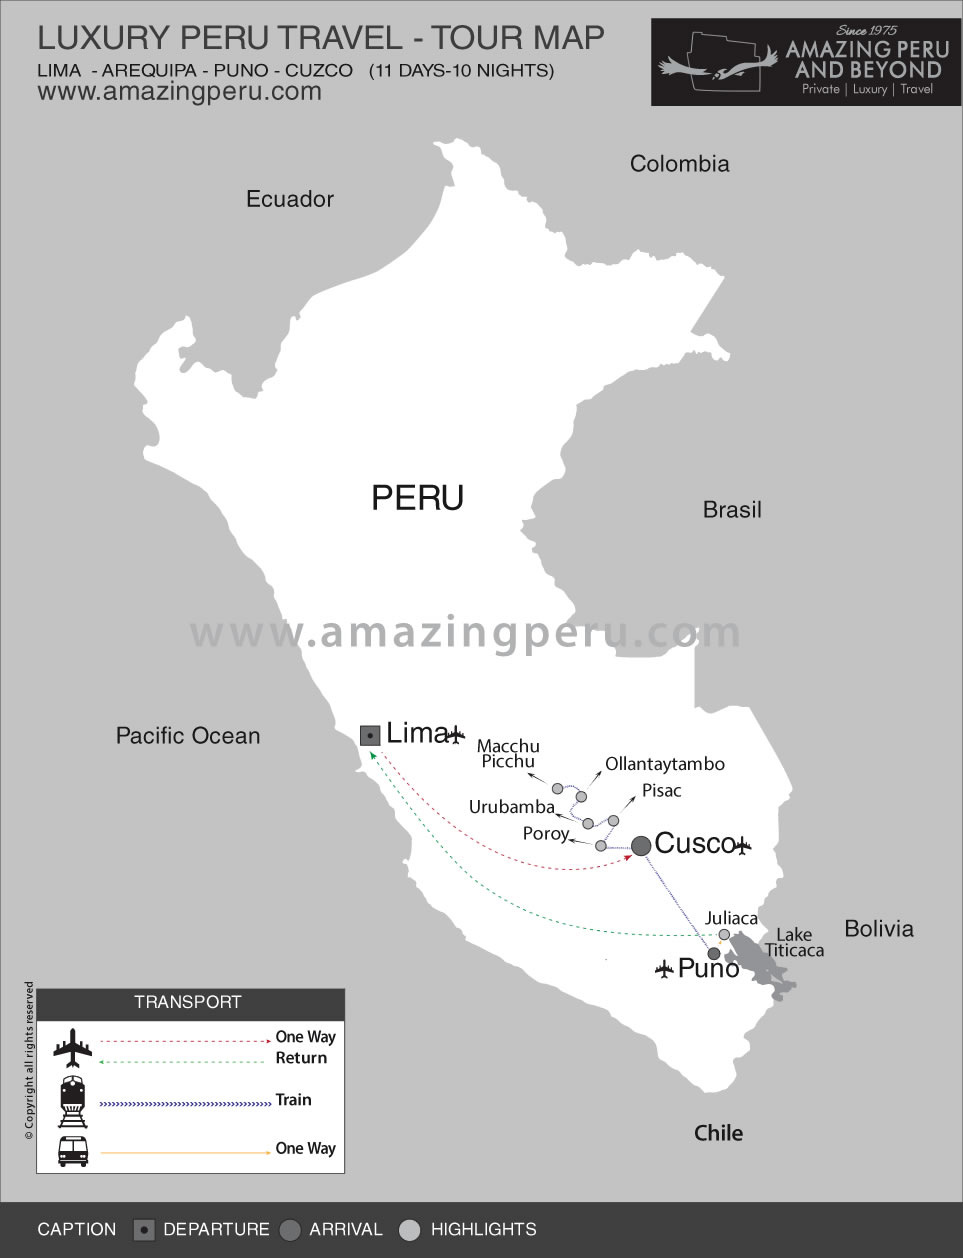 Luxury Peru Highlights - Option 1 - 10 days / 9 nights.